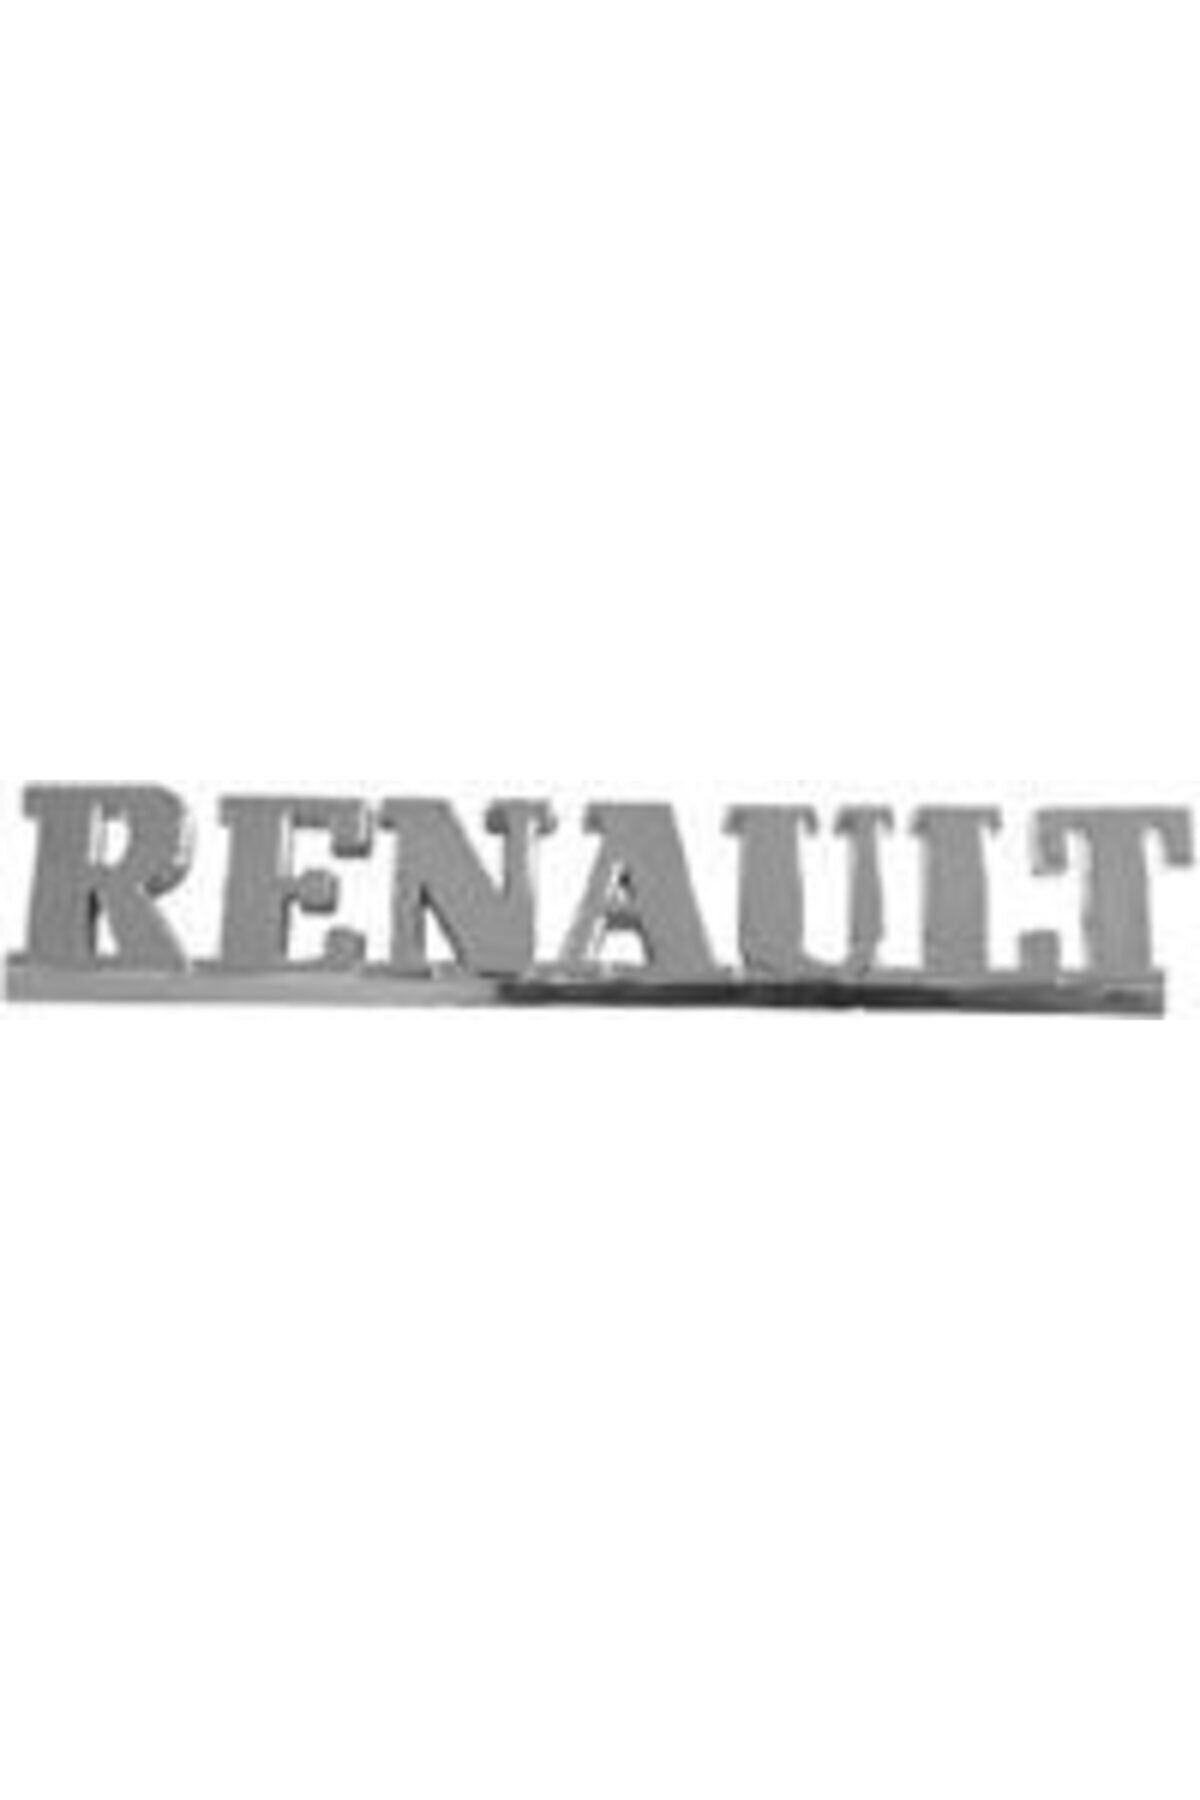 EDEXPORT Arka Yazı Renault Birleşik